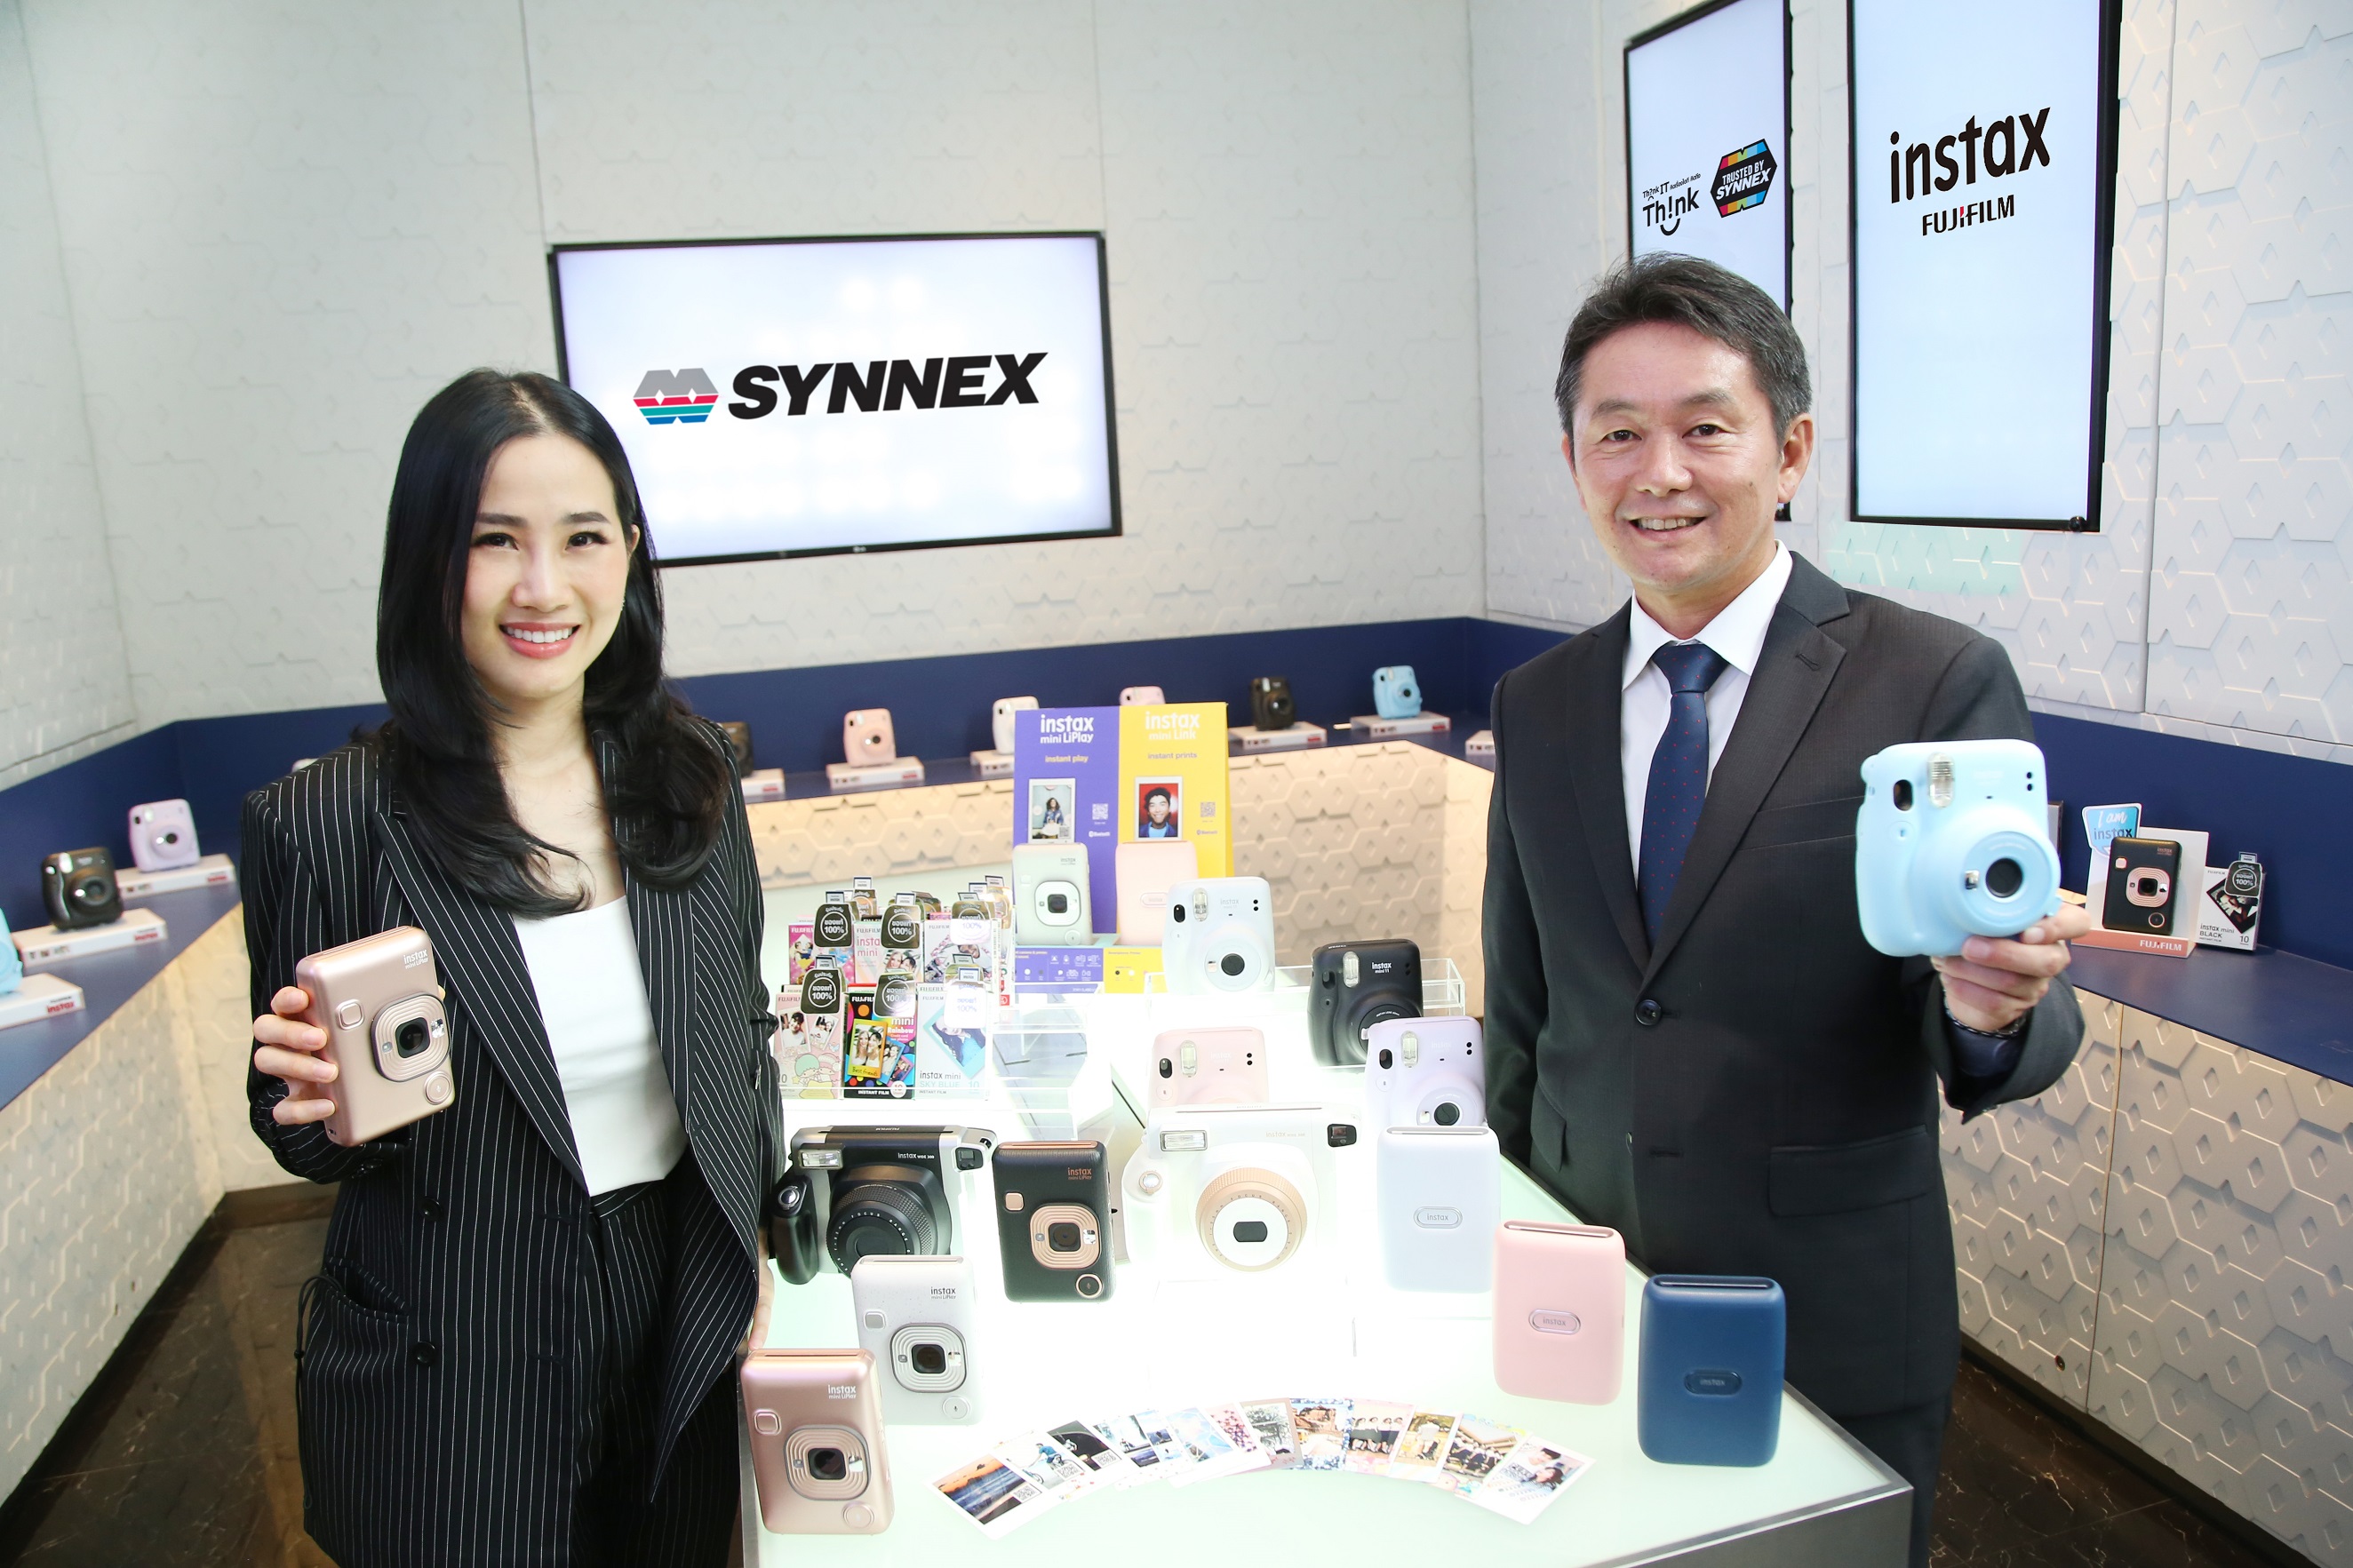 ซินเน็คฯ เซ็นสัญญา ฟูจิฟิล์ม ผนึกสองผู้นำรายใหญ่ทางเทคโนโลยี ดันกล้อง Instax ขยายมาร์เก็ตแชร์ตลาดในประเทศ